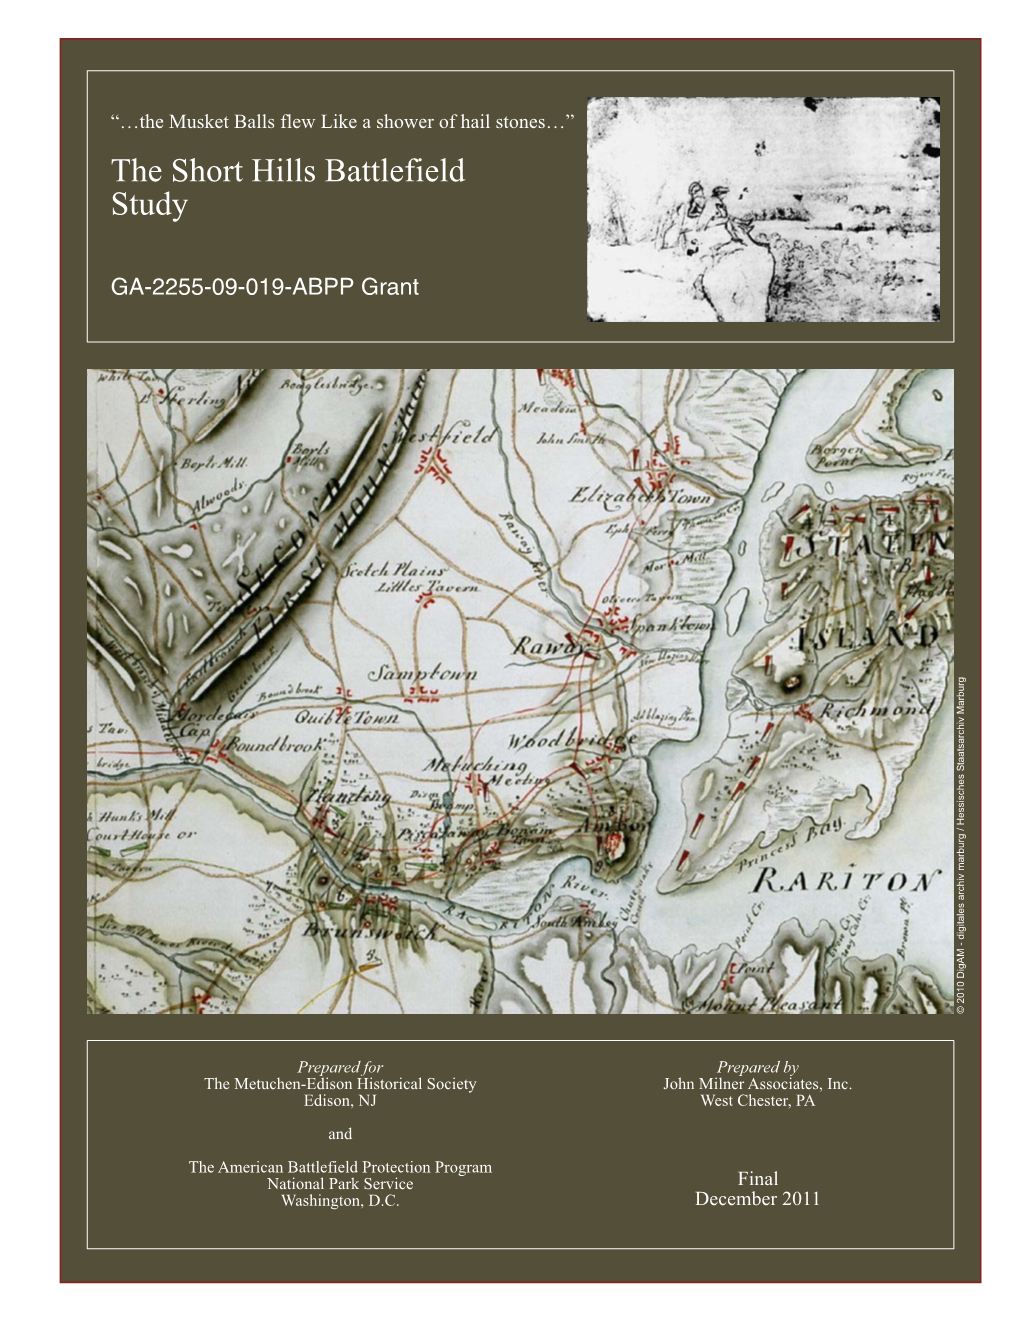 The Short Hills Battlefield Study